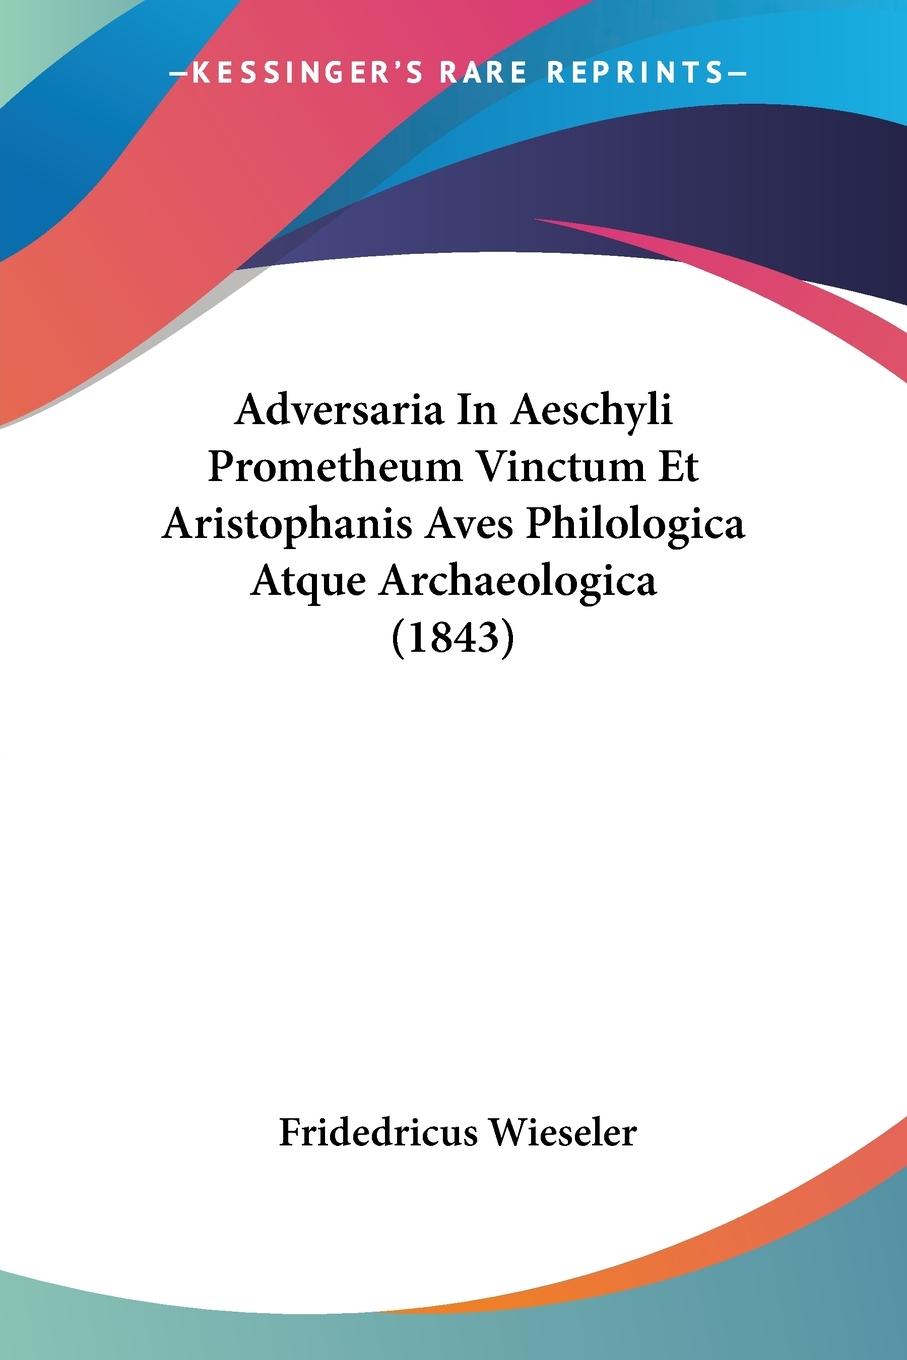 Adversaria In Aeschyli Prometheum Vinctum Et Aristophanis Aves Philologica Atque Archaeologica (1843) - Wieseler, Fridedricus